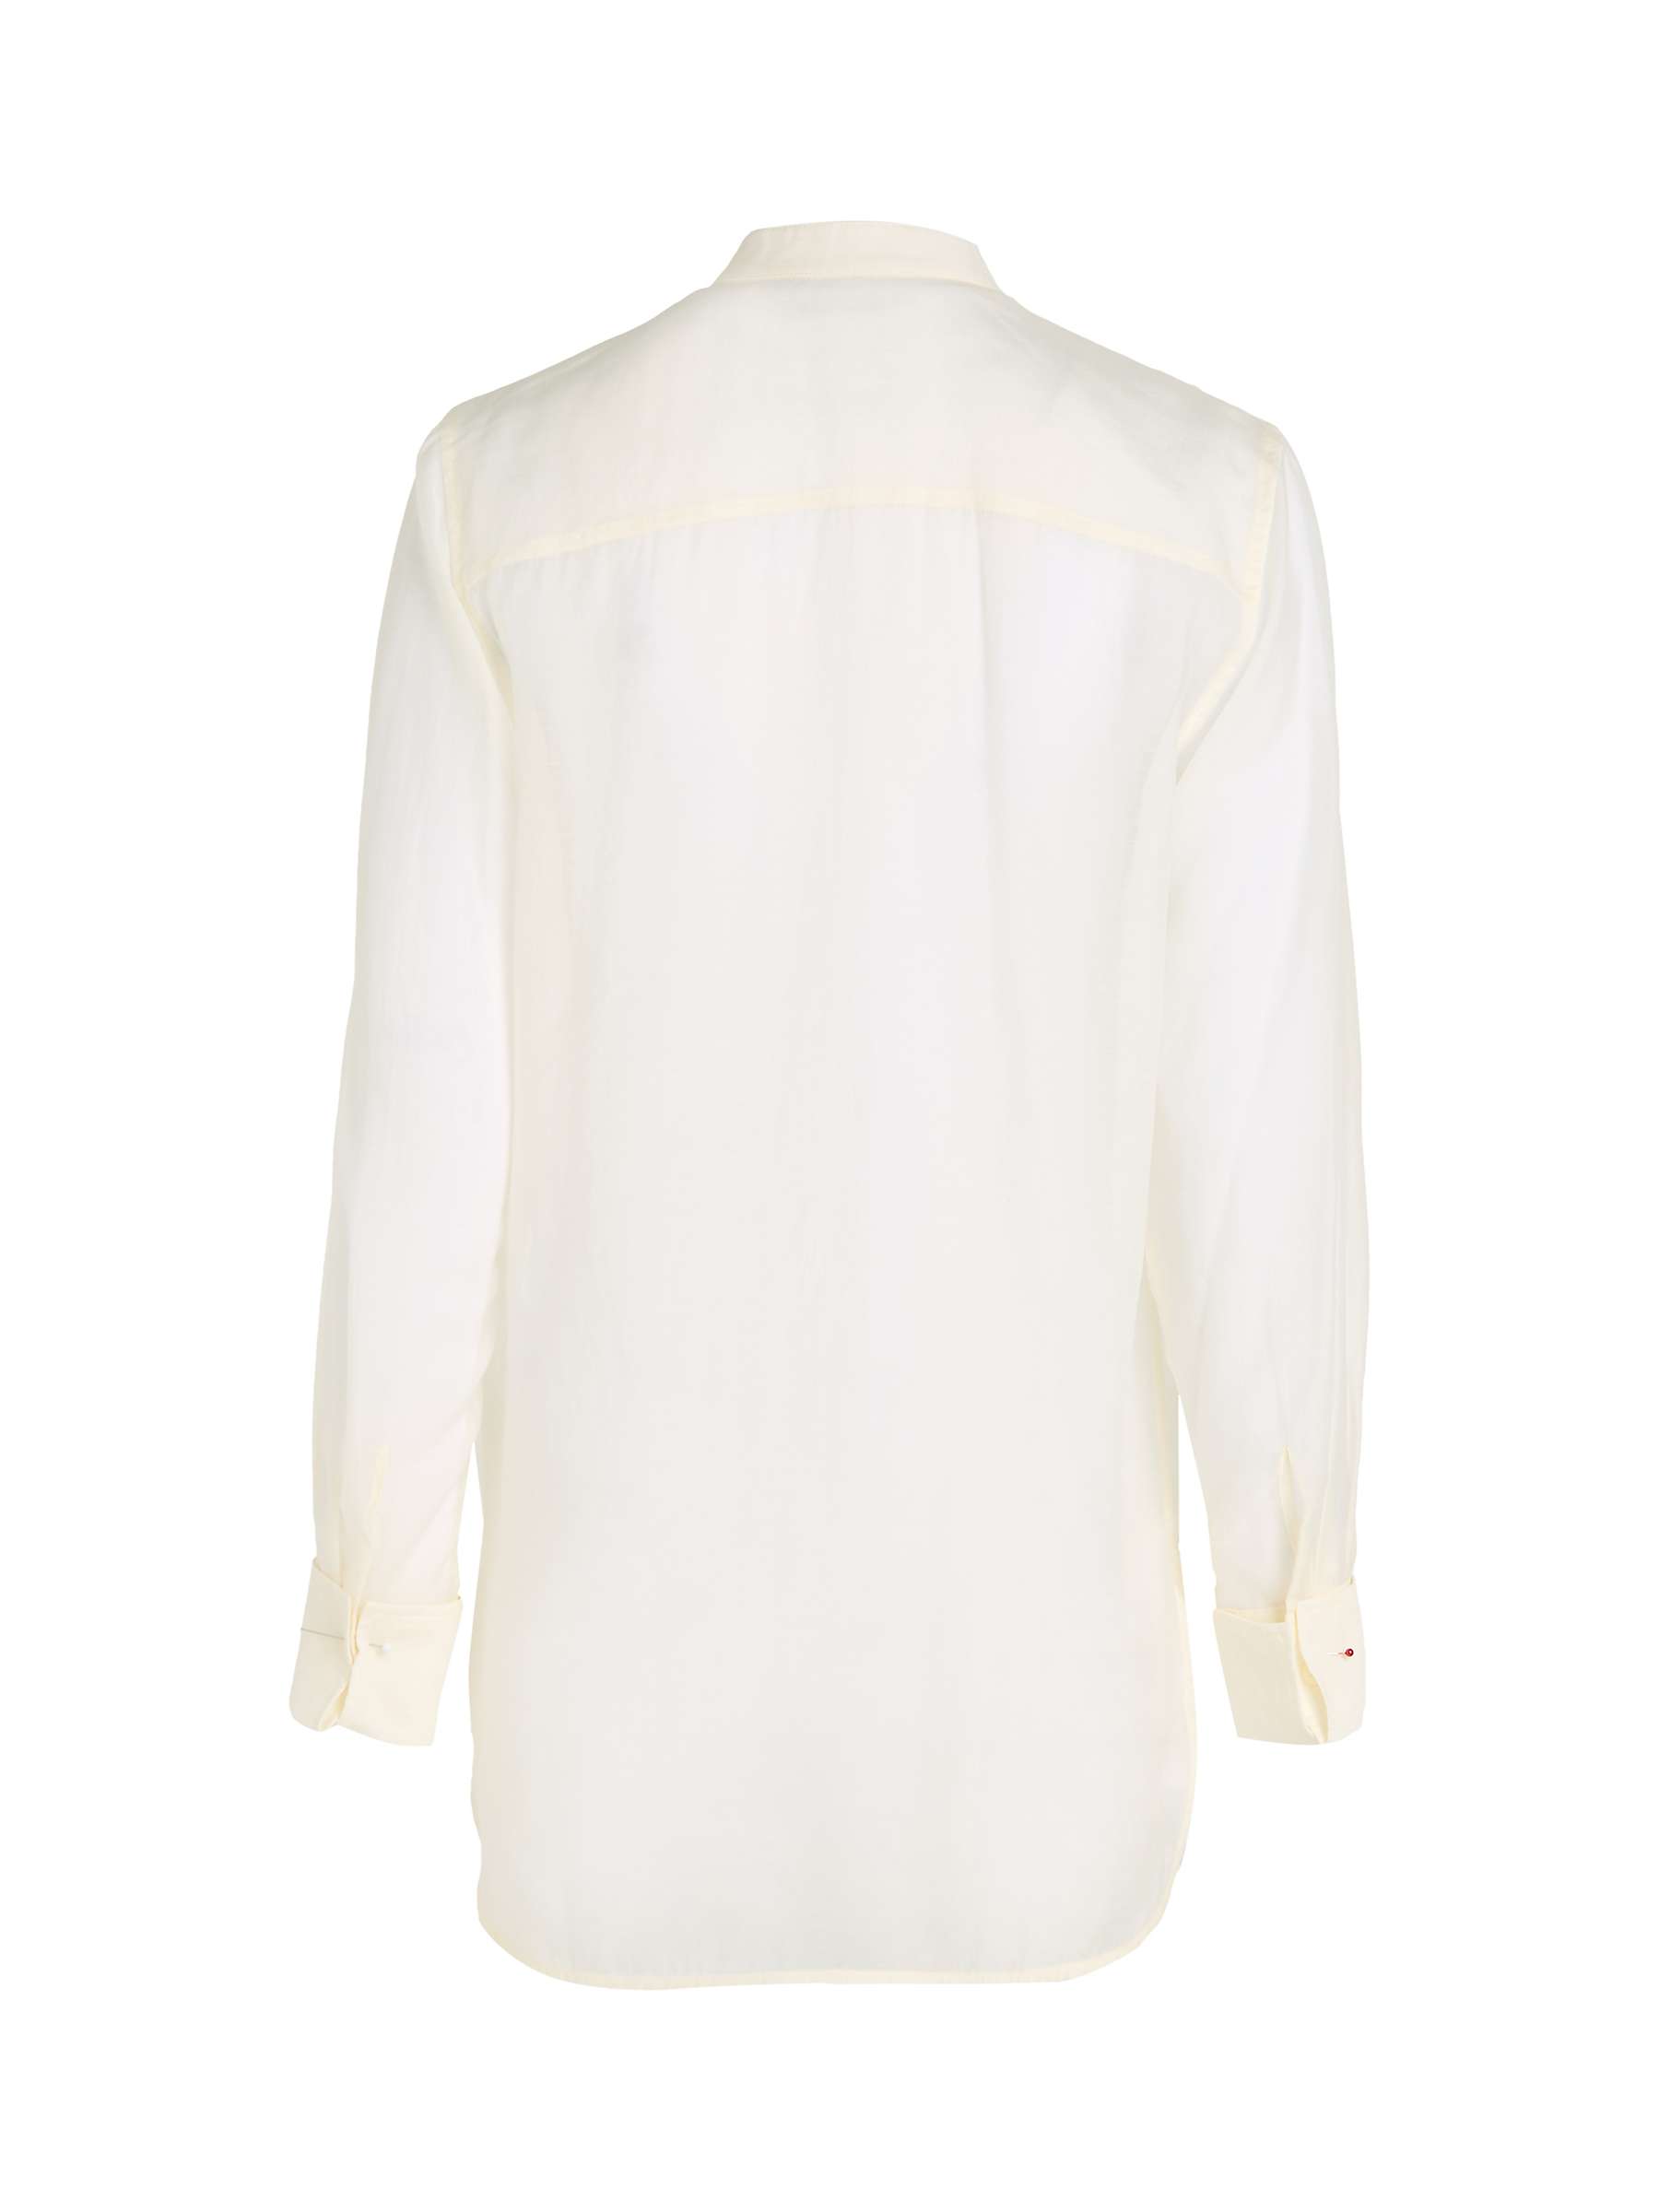 Buy Calvin Klein Pleat Shirt, Vanilla Ice Online at johnlewis.com